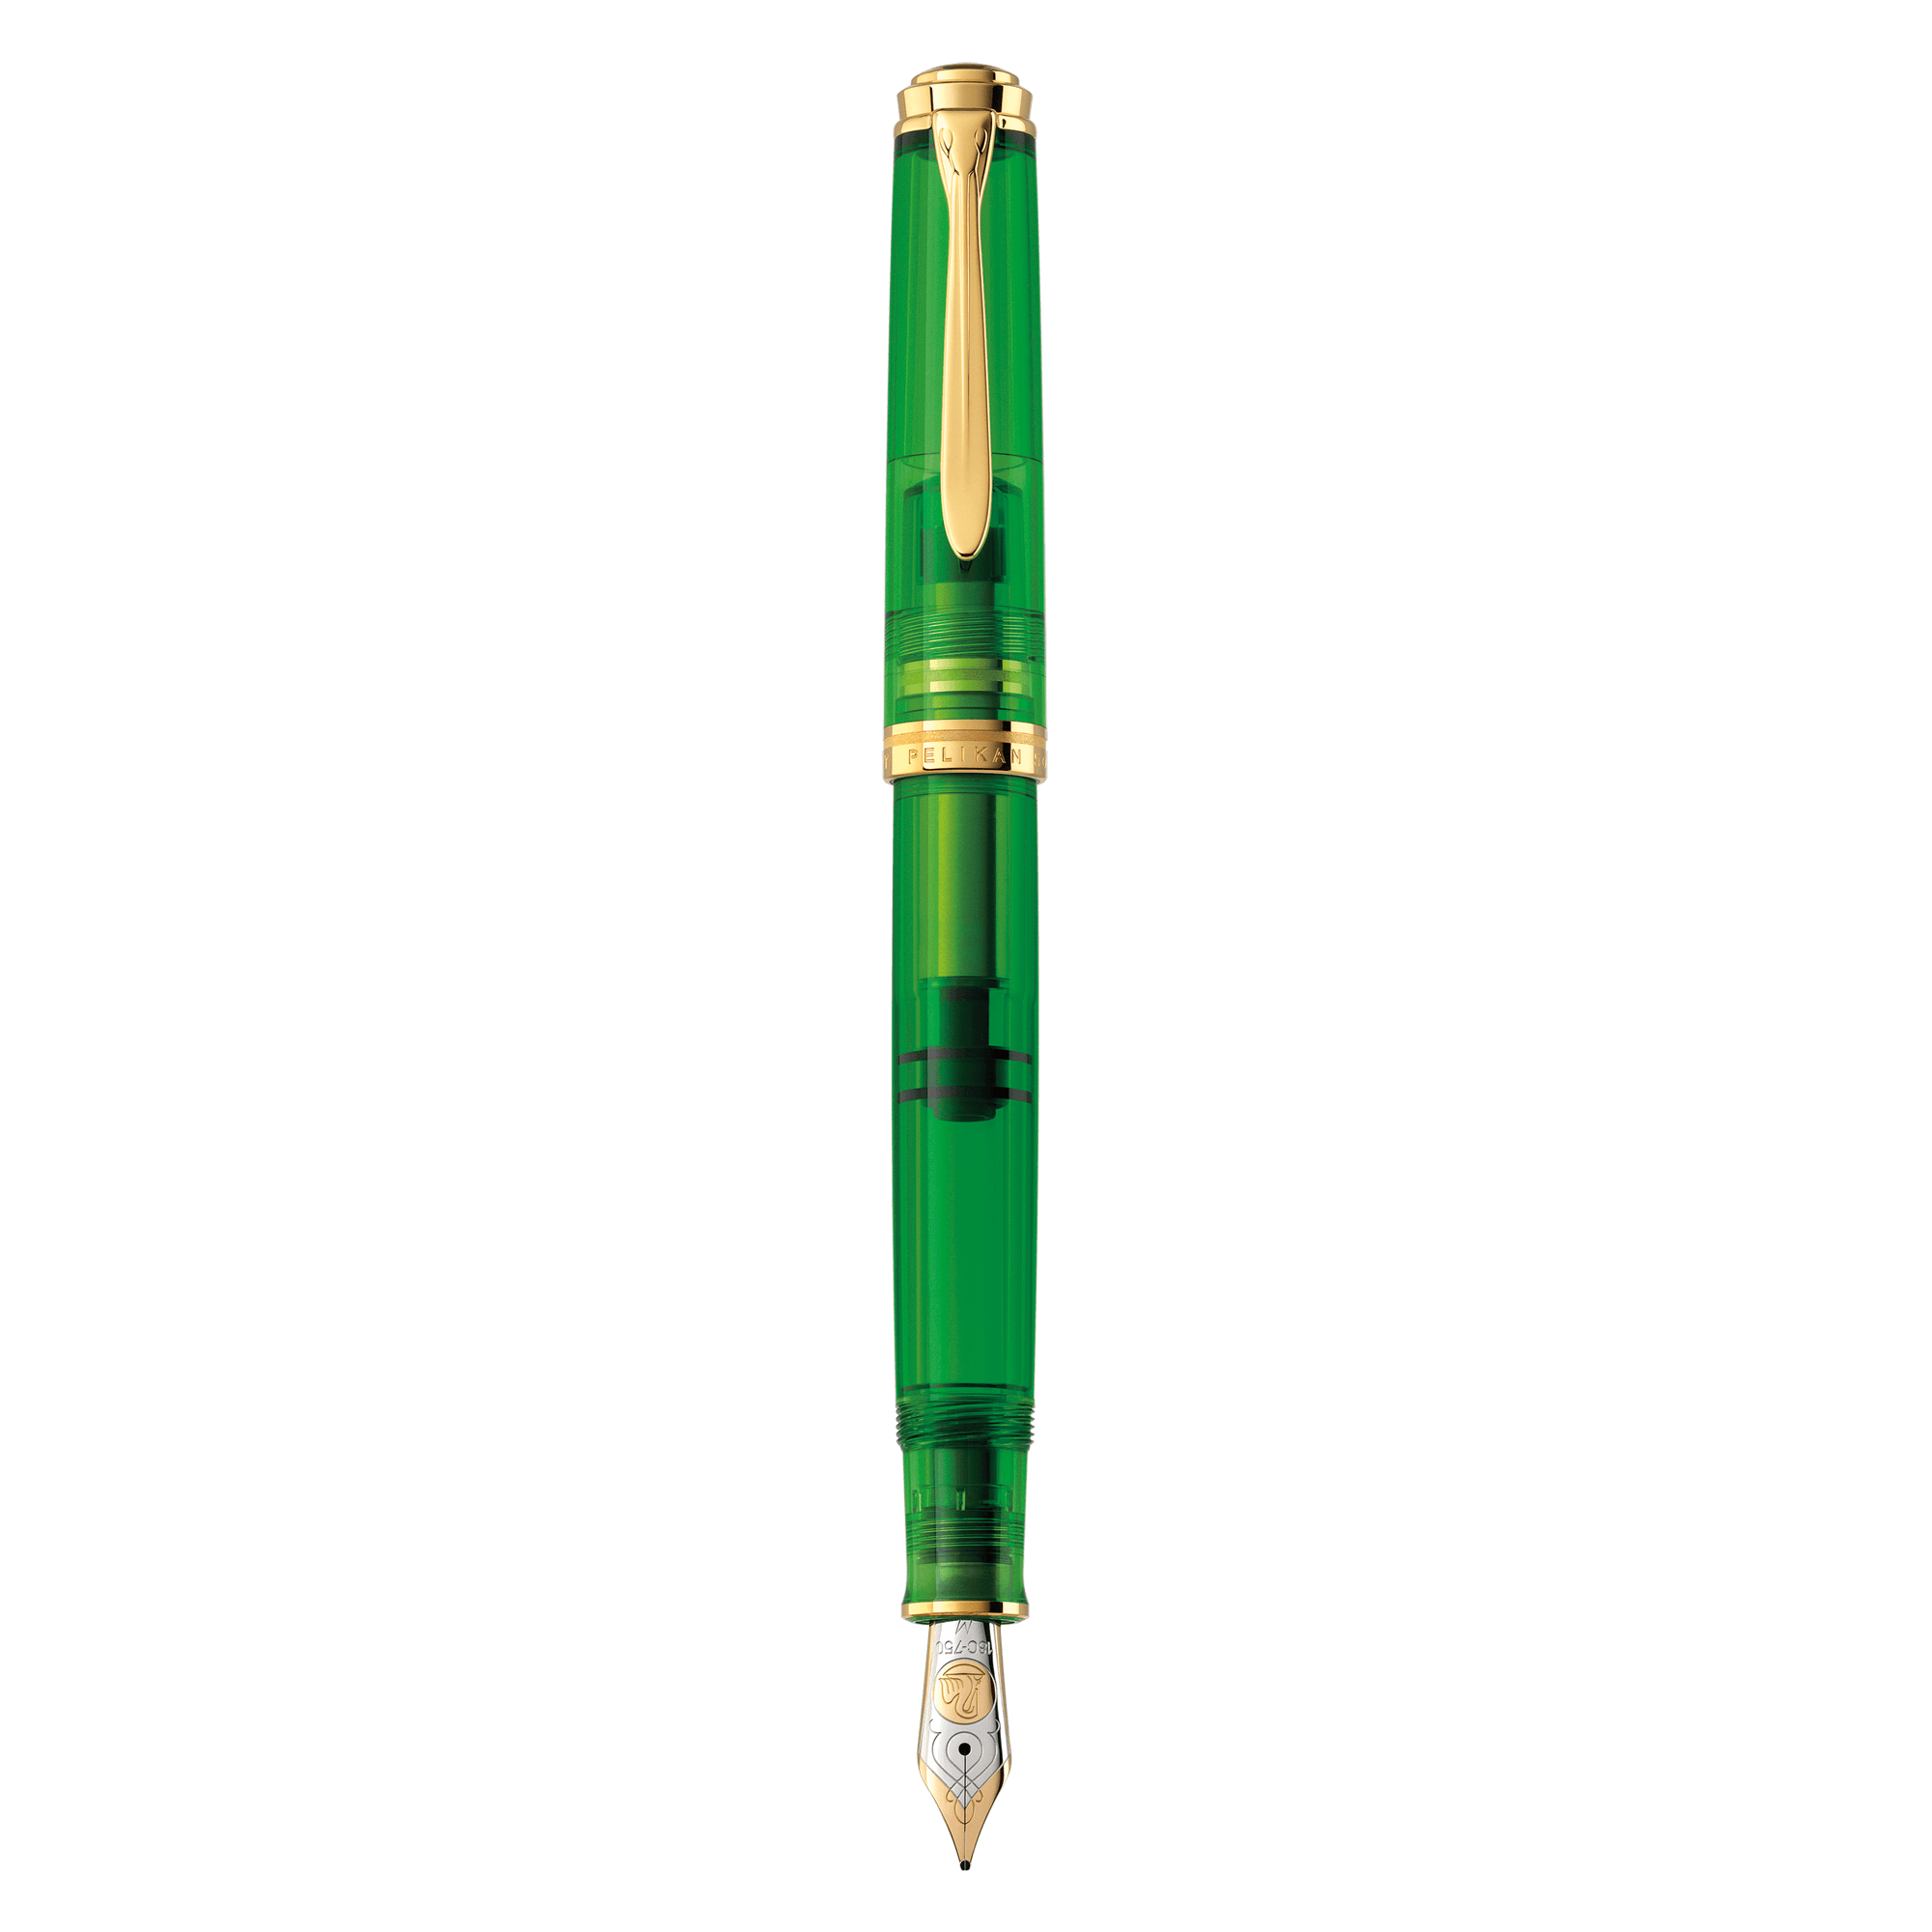 Pelikan Souverän M800 Green Demonstrator Fountain Pen - Pencraft the boutique